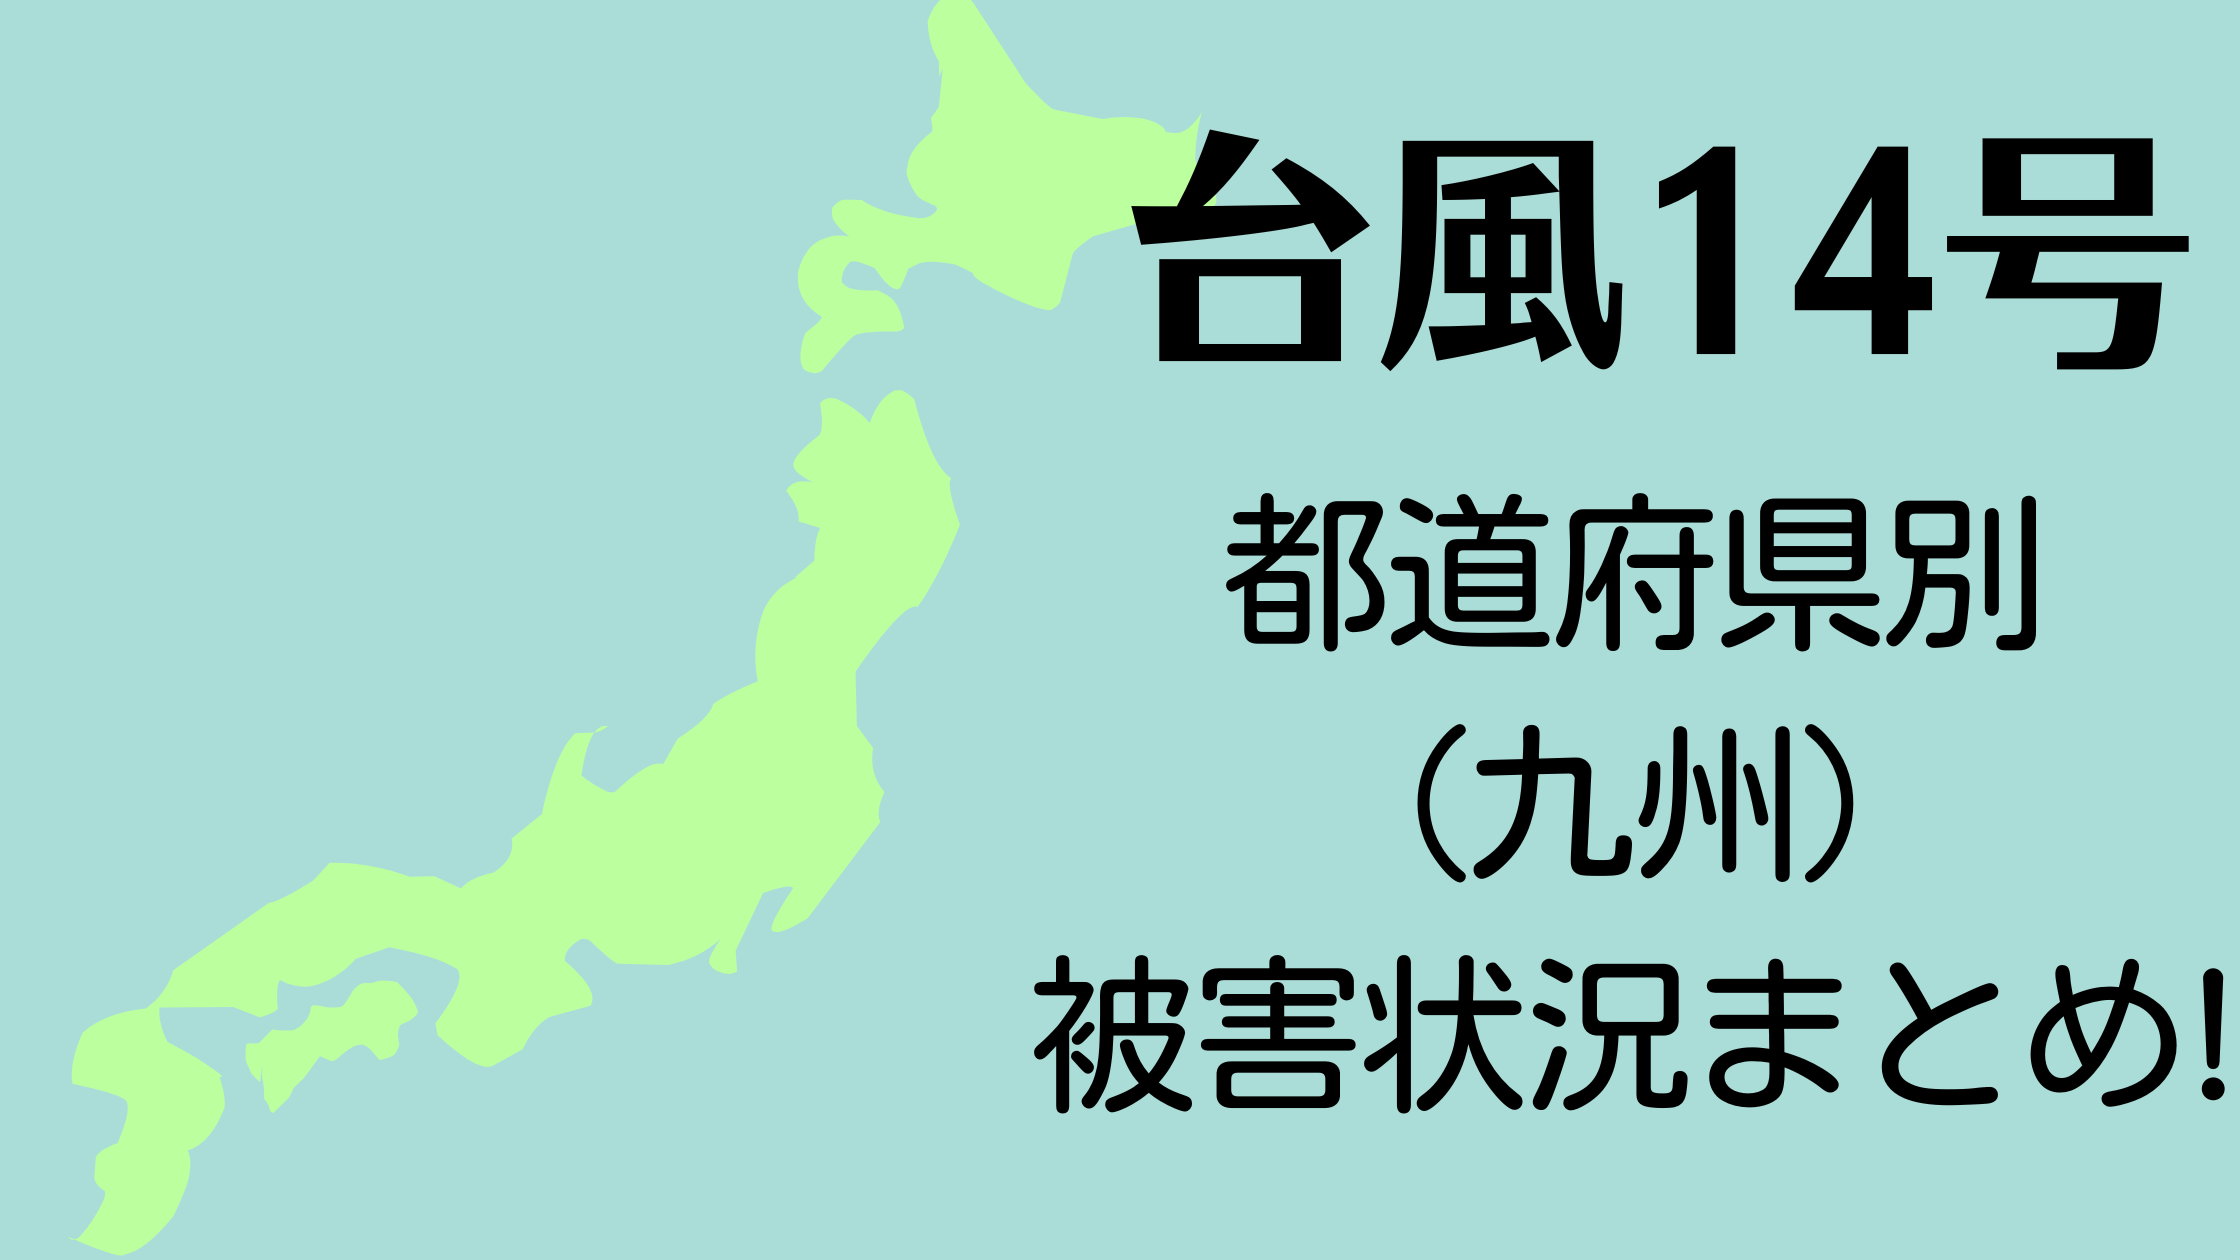 【動画】台風14号都道府県別被害状況まとめ!Twitterで各地の声【最新】